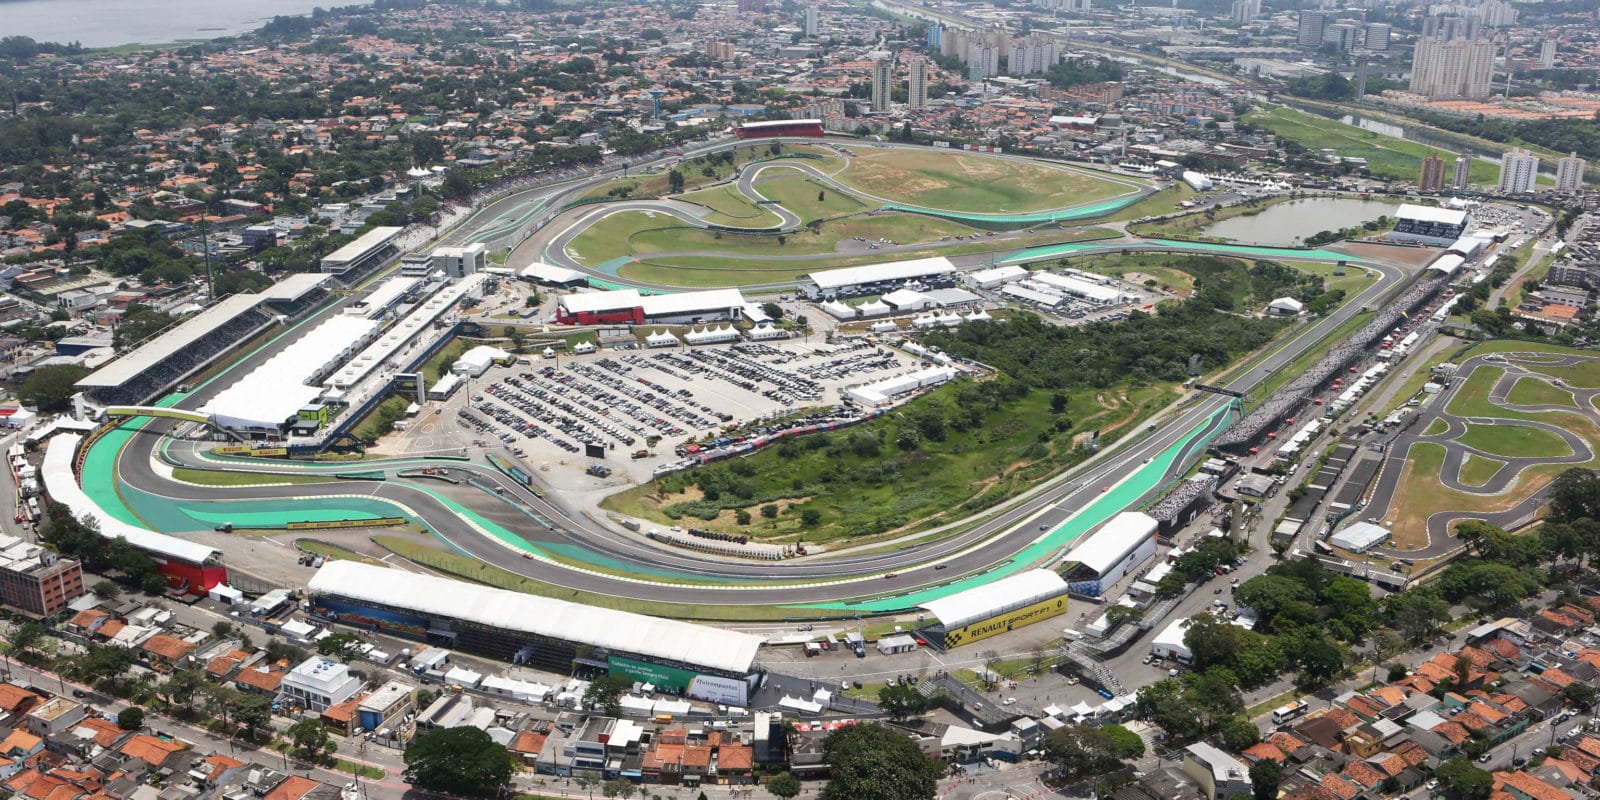 Guvernér São Paula hodlá udržet závod na Interlagosu